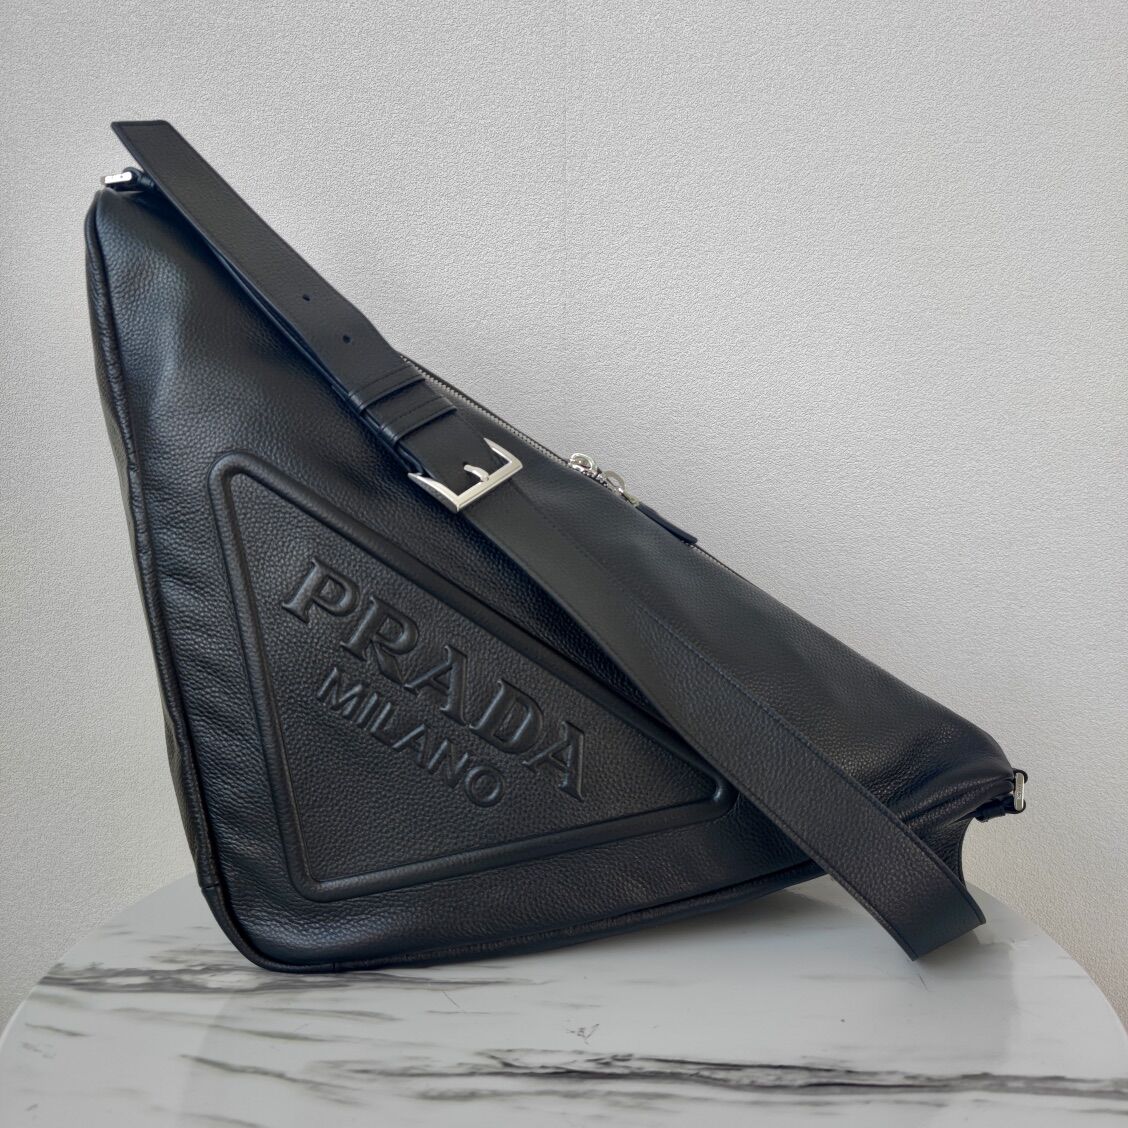 Prada Deer skin Leather Triangle shoulder bag 2VD012 black